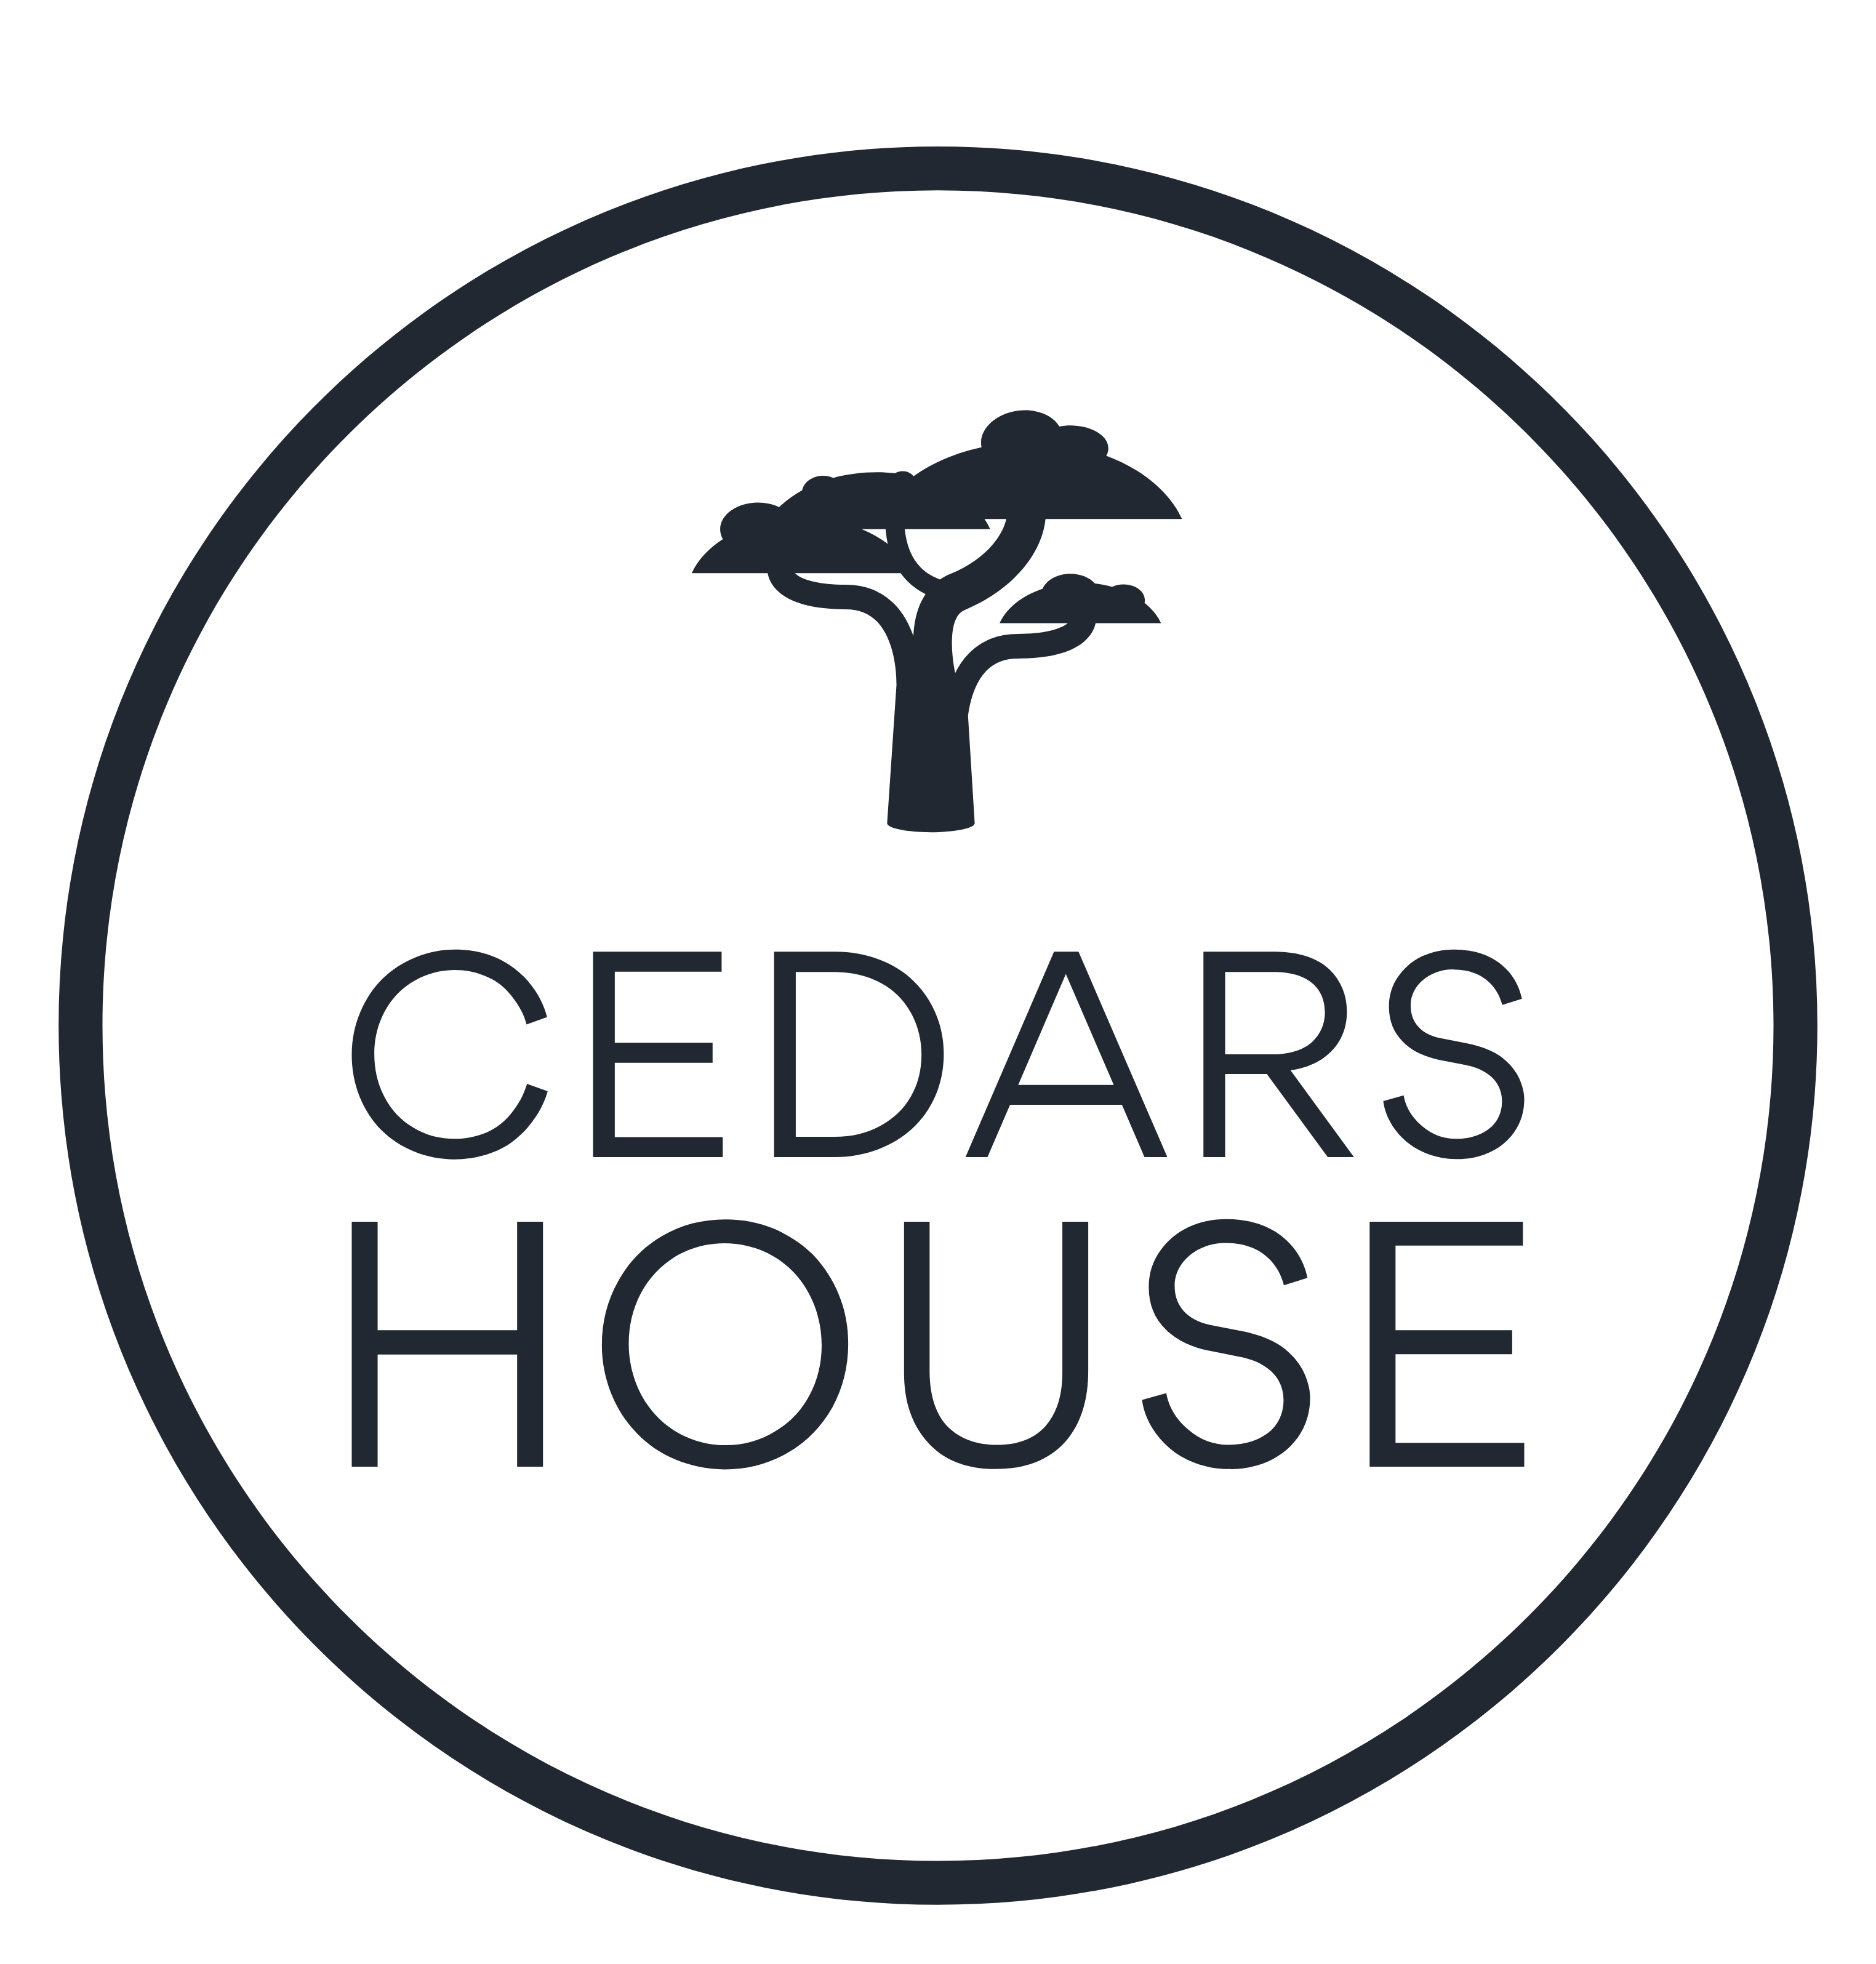 Cedars House